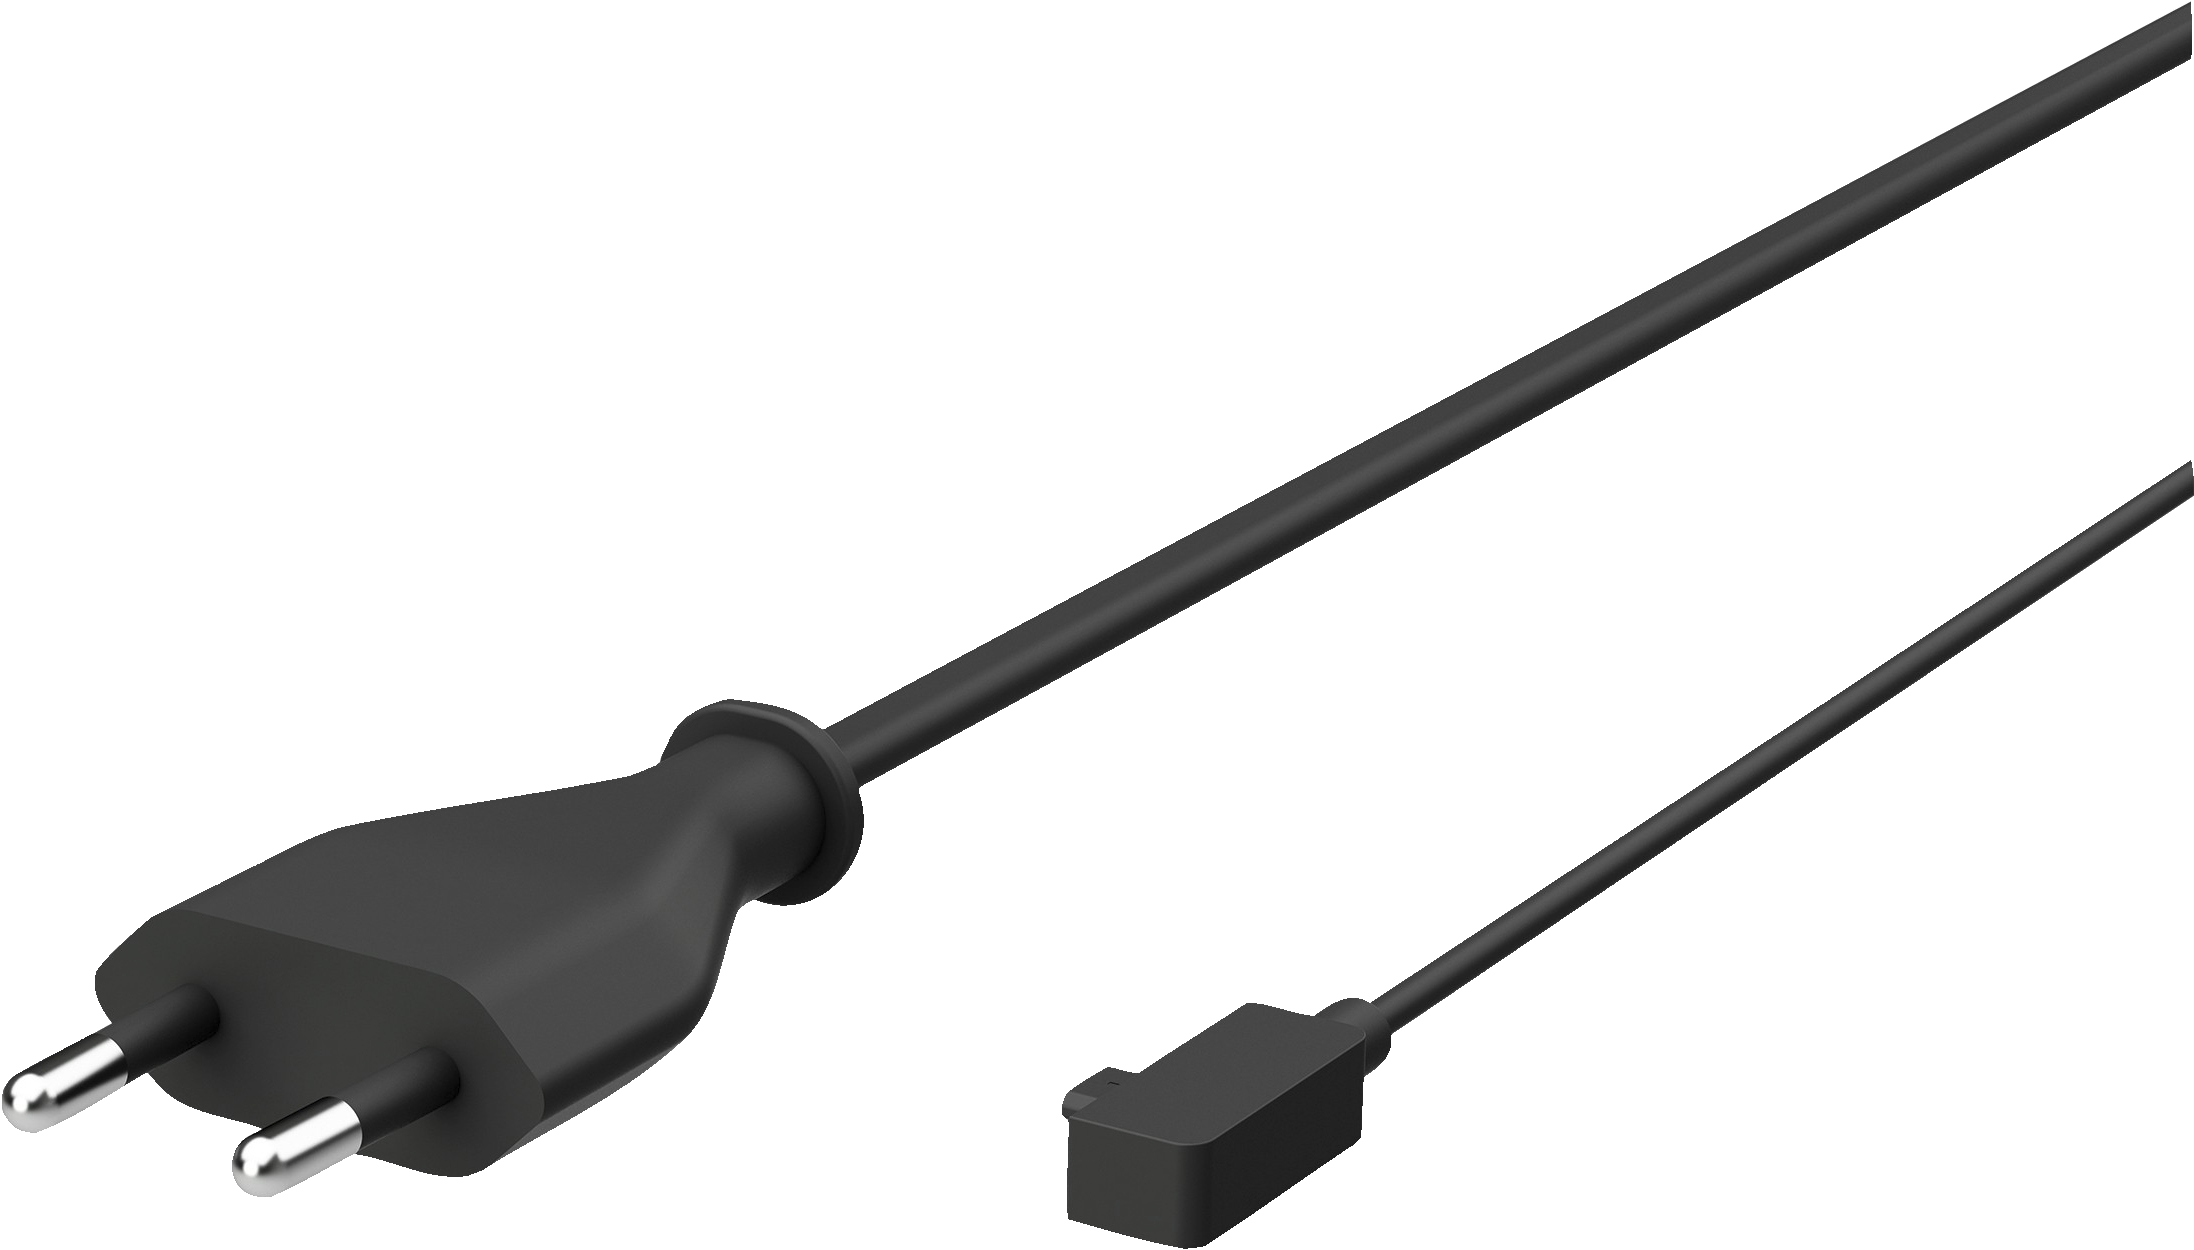 Surface 3 13W strømforsyning - Kabler og tilkobling - PC og nettverk -  Elkjøp